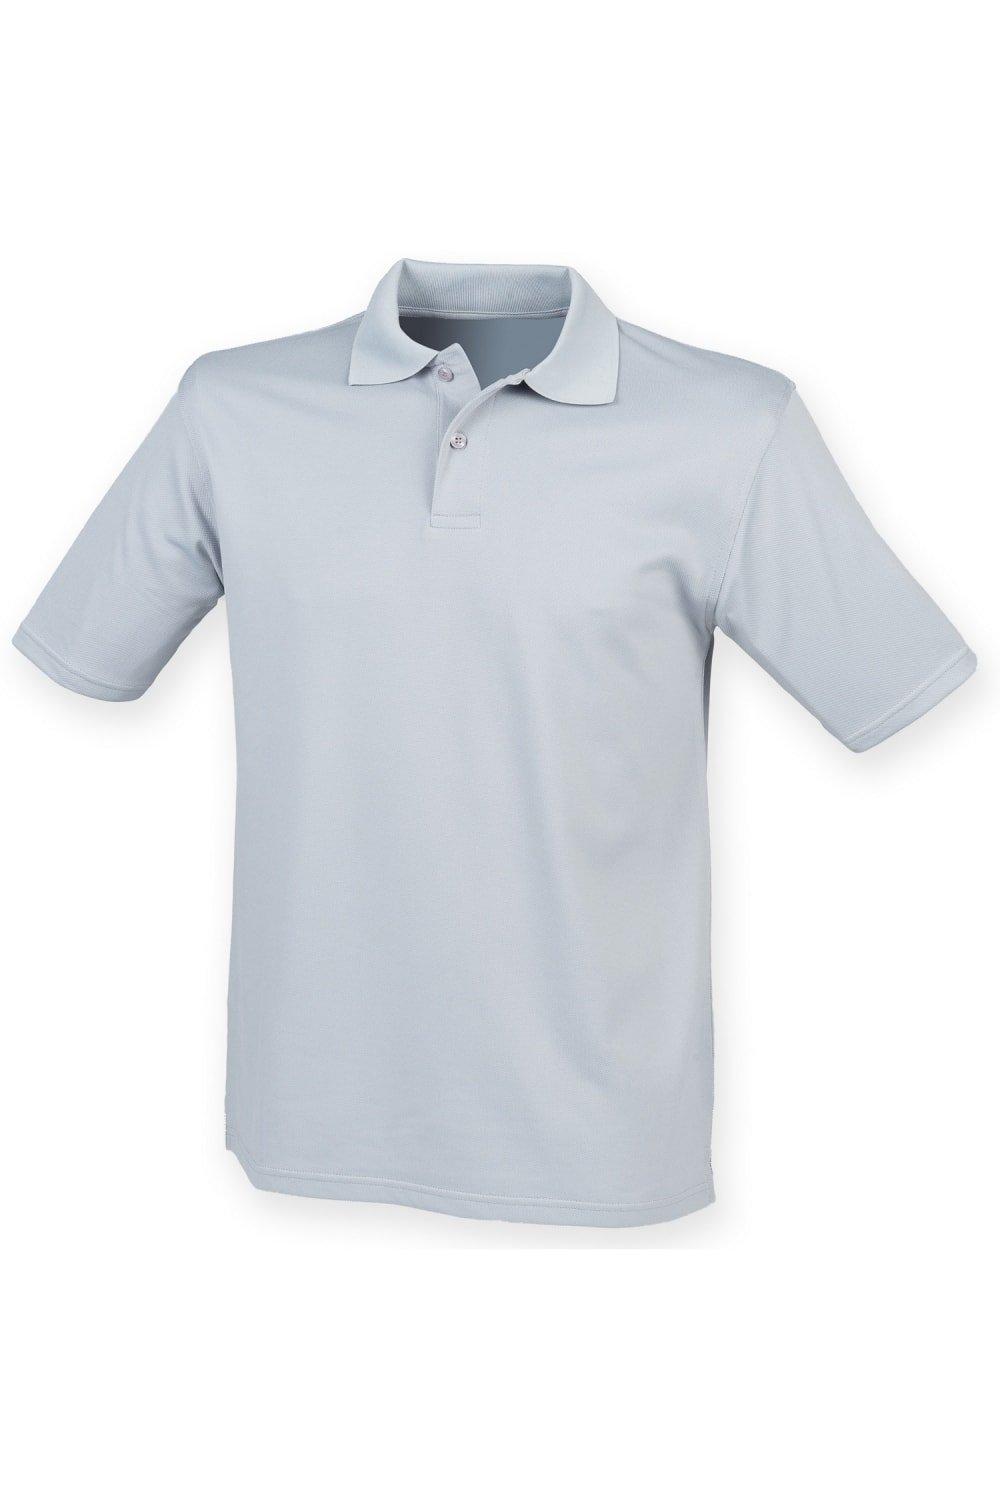 Рубашка поло Coolplus из пике Henbury, серебро рубашка поло coolplus из пике henbury зеленый